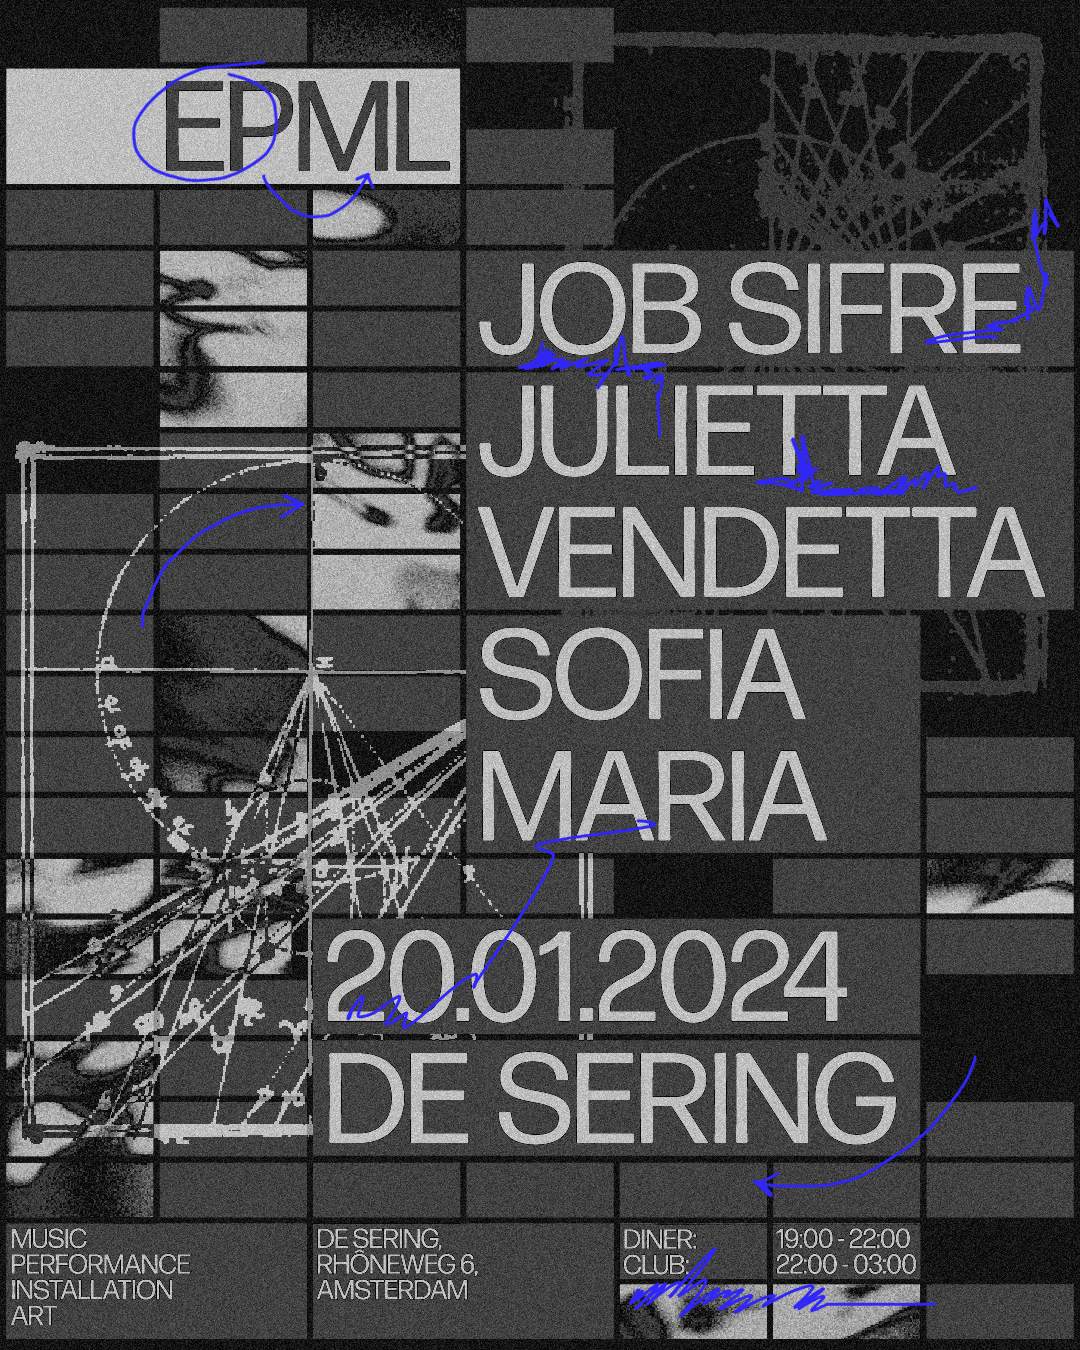 EPML_01 w/ Job Sifre / Julietta Vendetta / Sofia Maria - フライヤー表